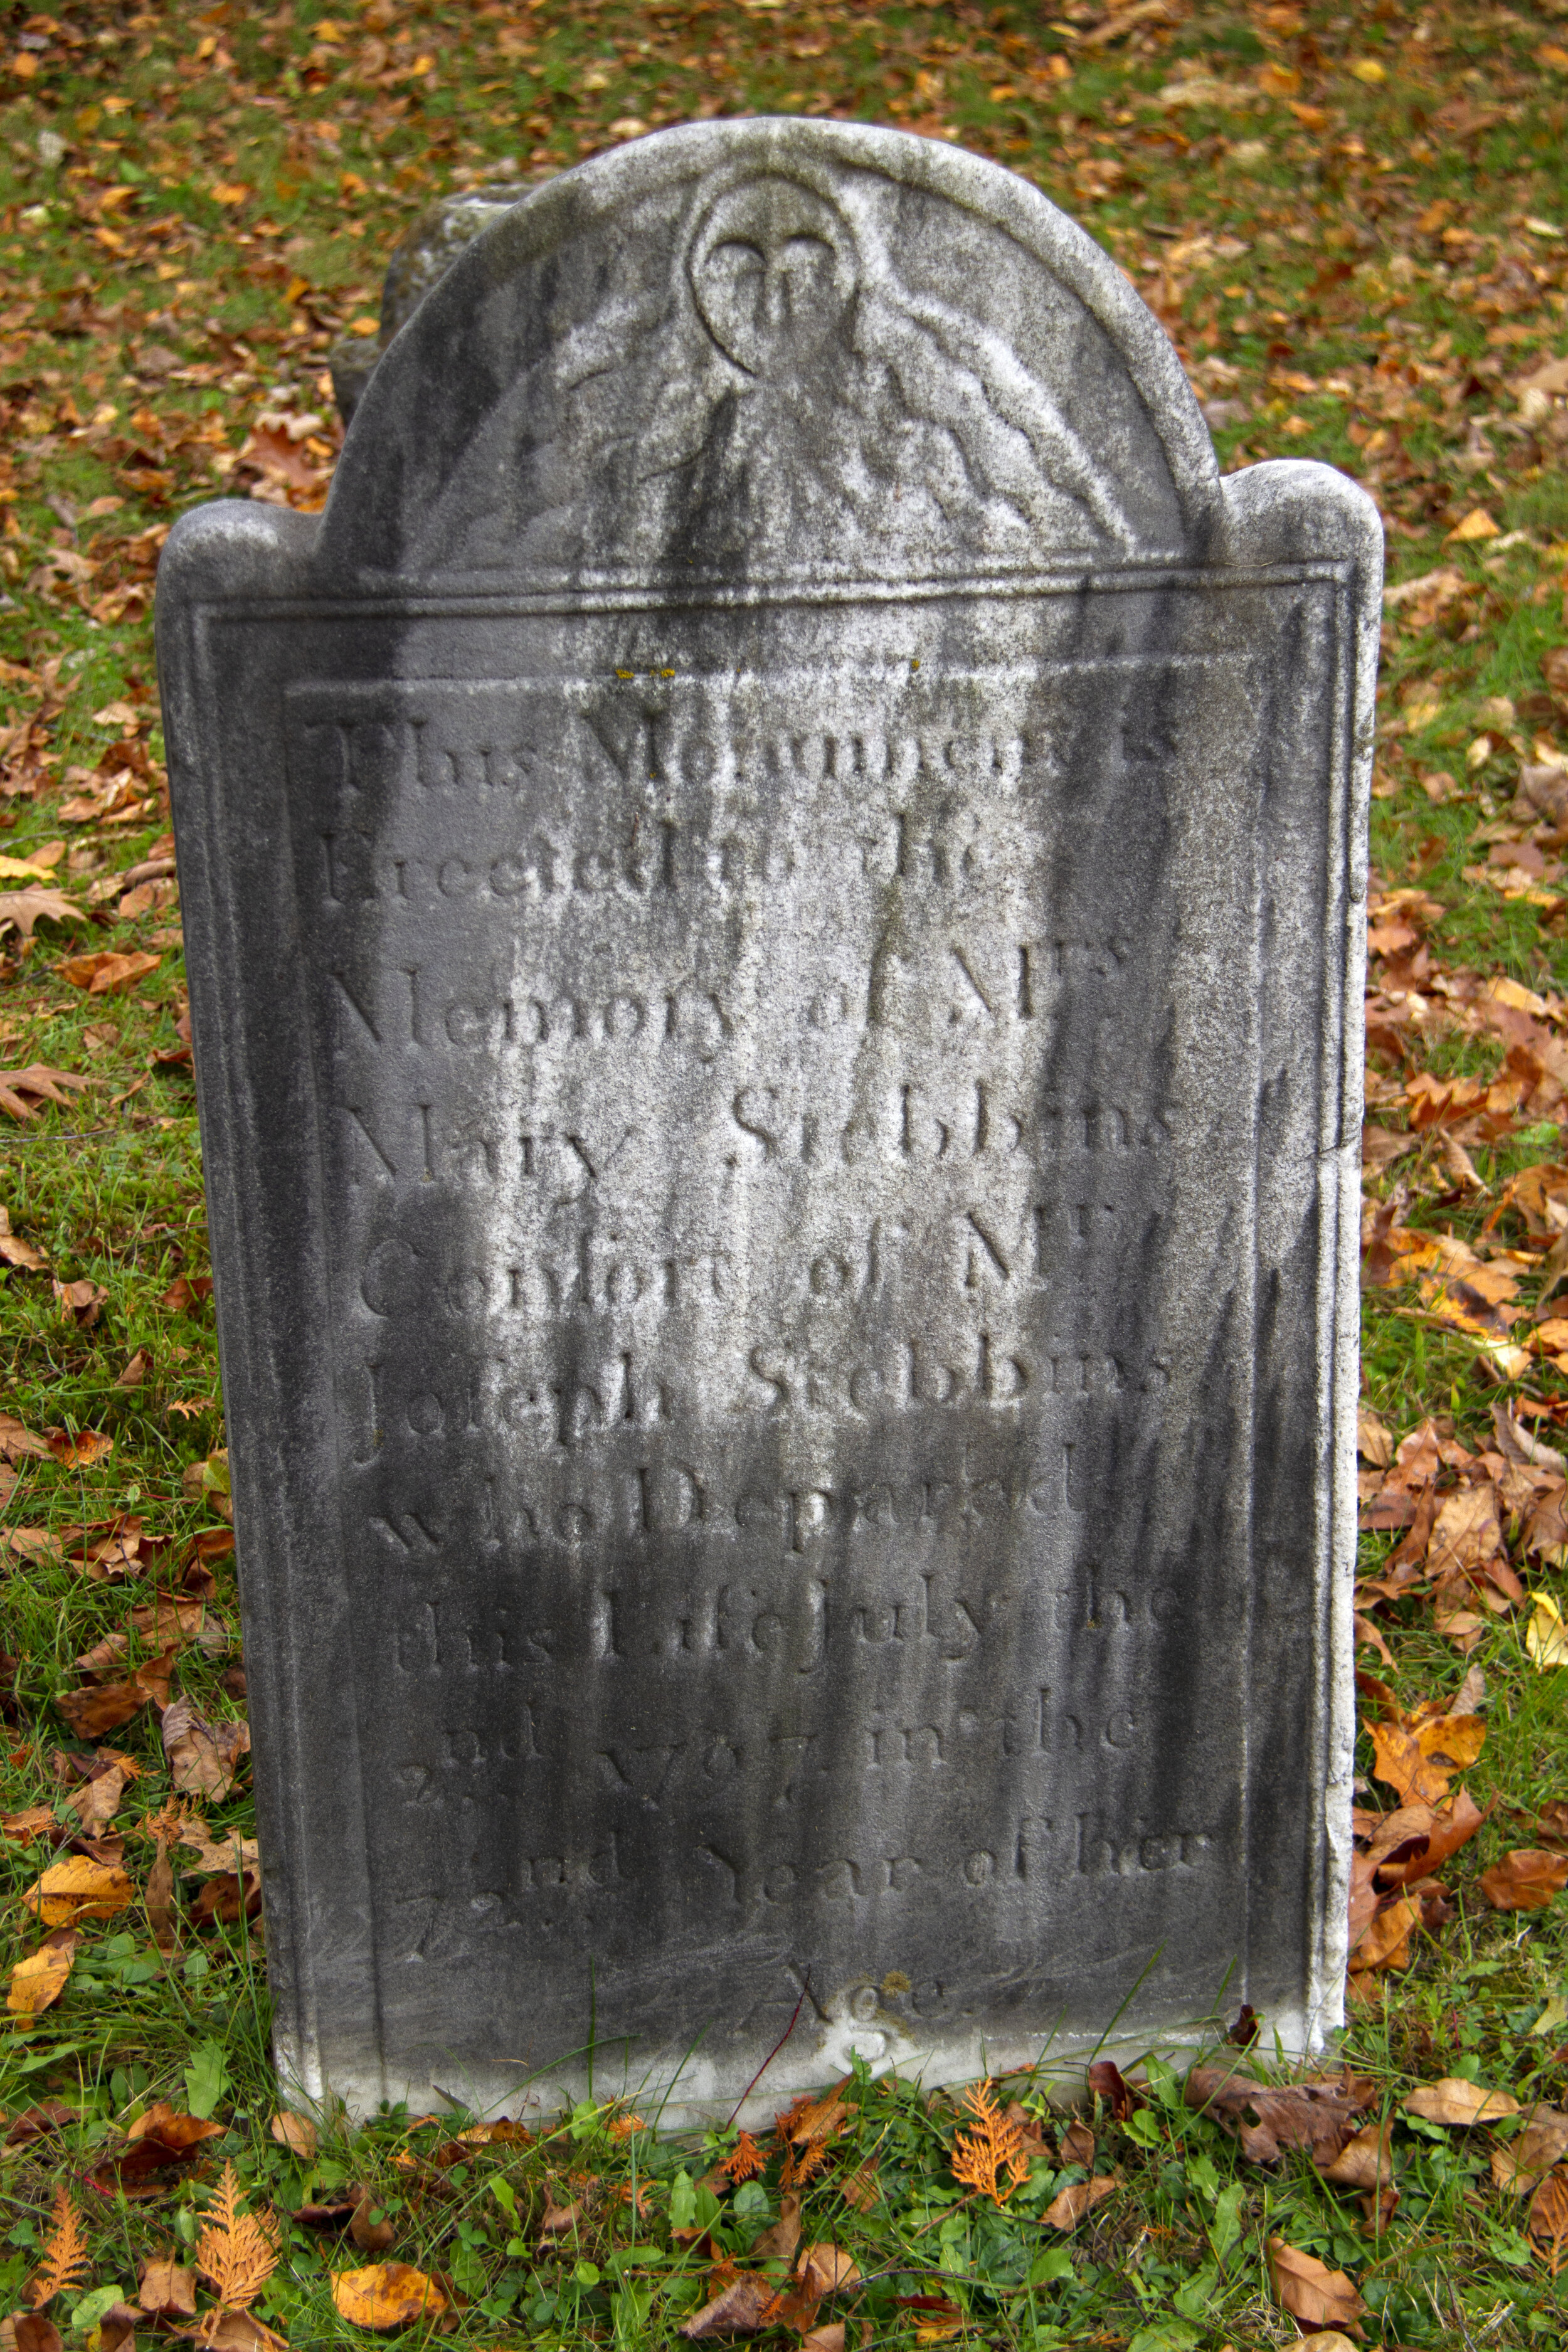 Pierre tombale Stebbins, ancien cimetière de Deerfield